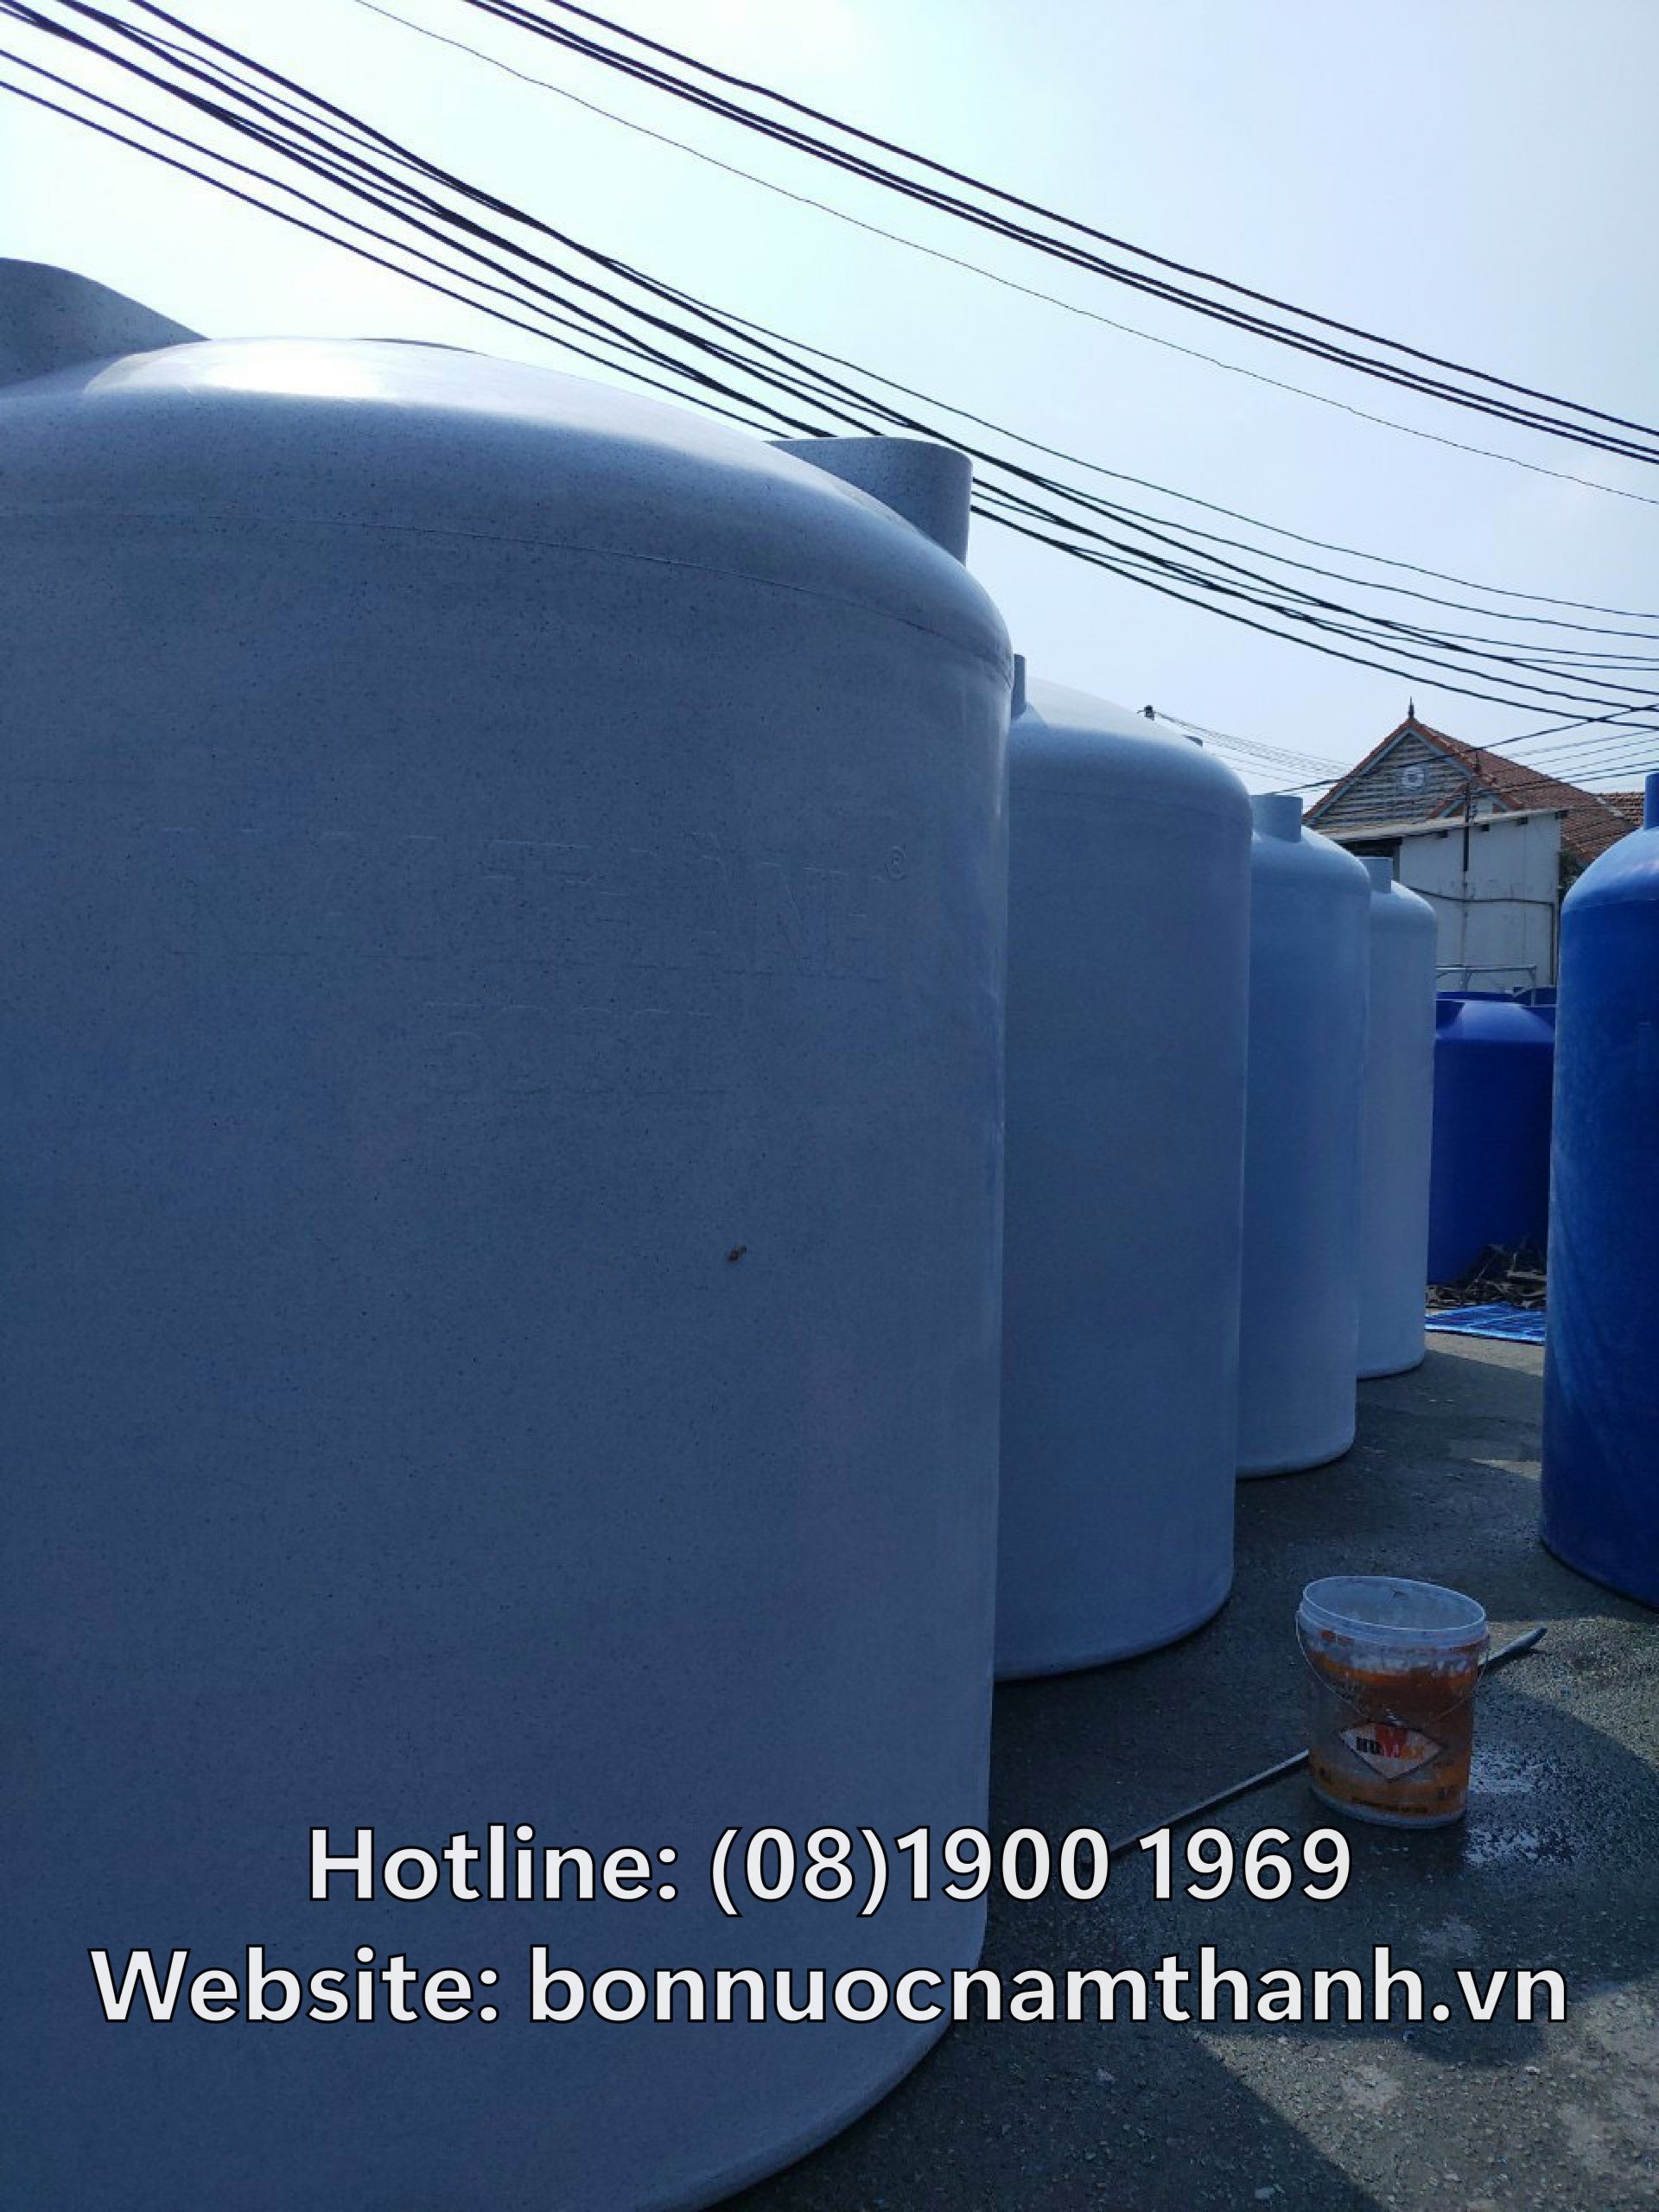 Lợi ích khi sử dụng bồn nước nhựa Nam Thành tại Đồng Tháp